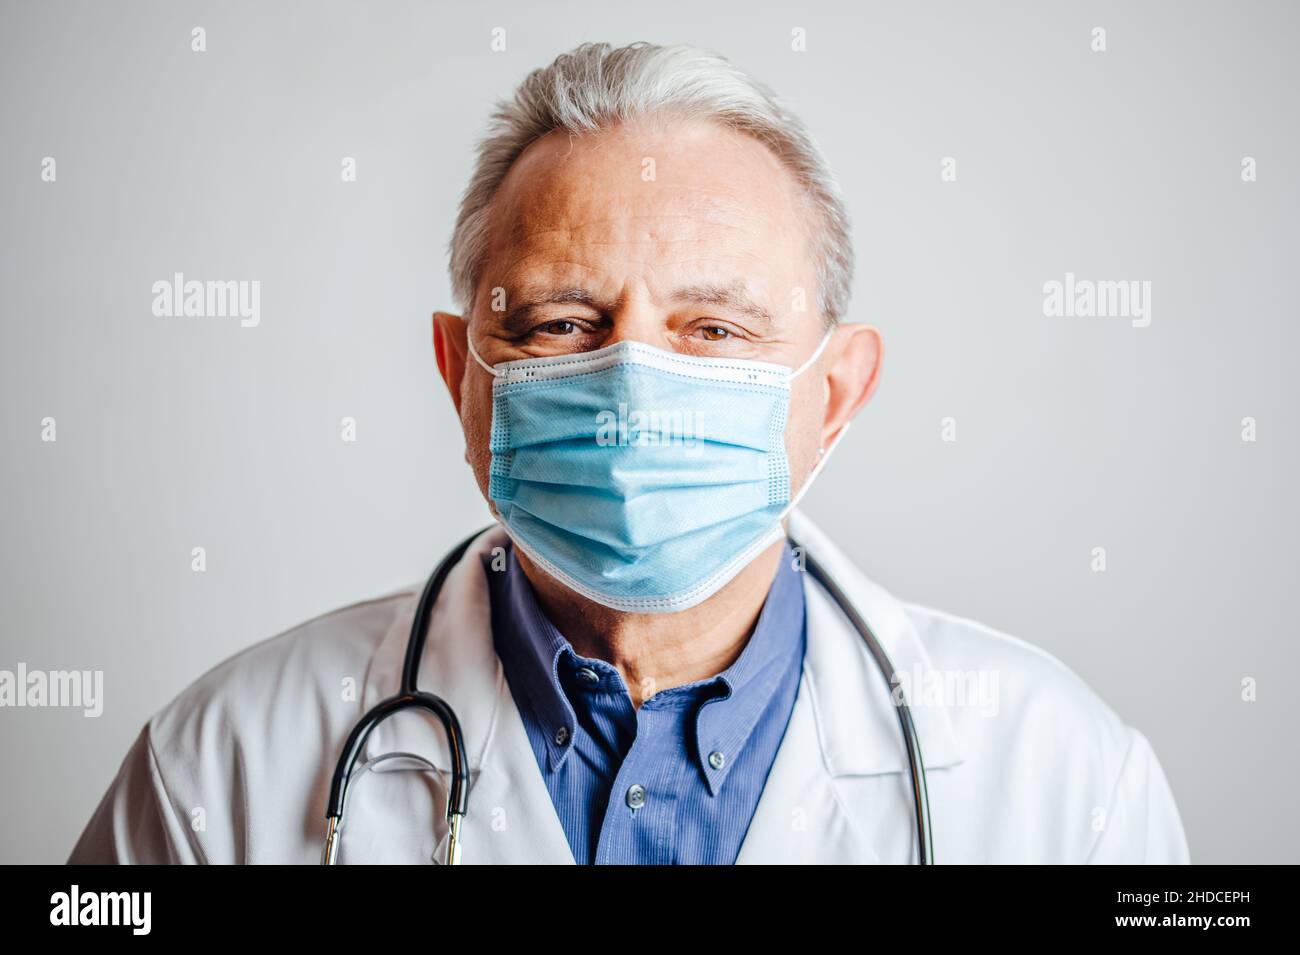 El médico lleva una mascarilla facial y un estetoscopio alrededor de los cuellos altos Foto de stock